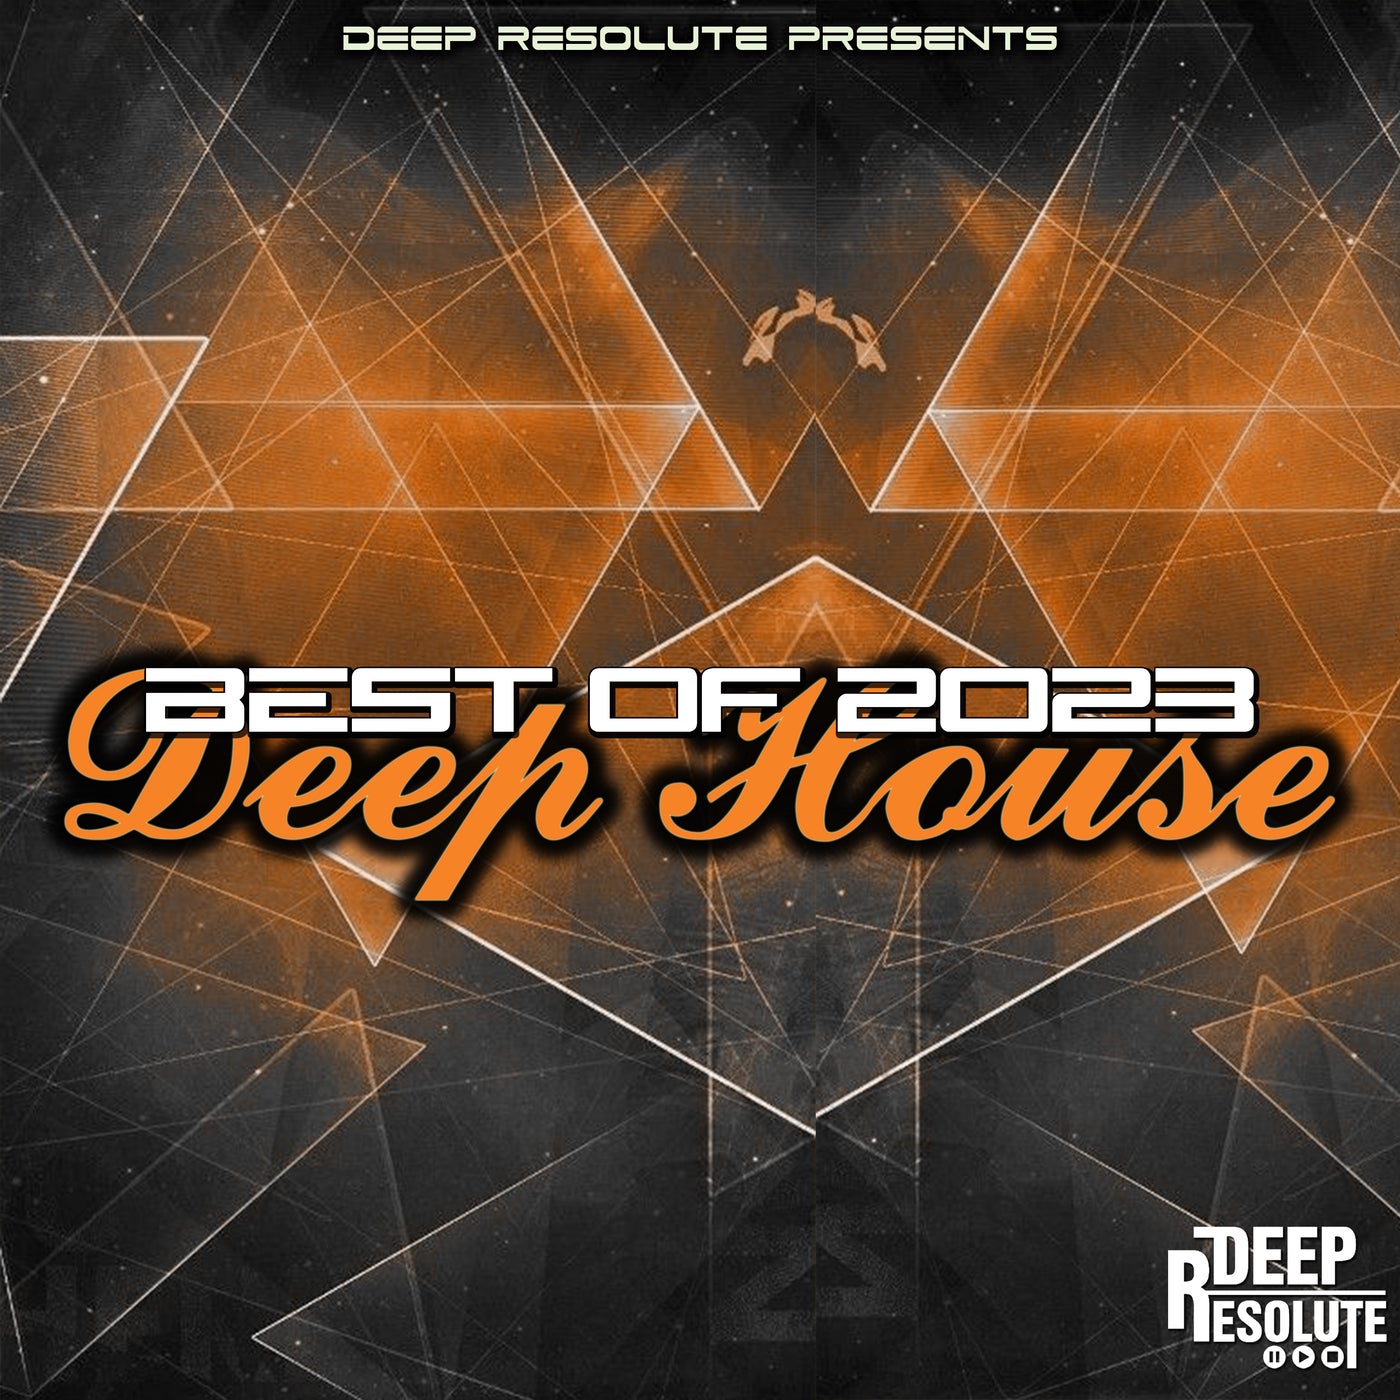 Best Of 2023 Deep House